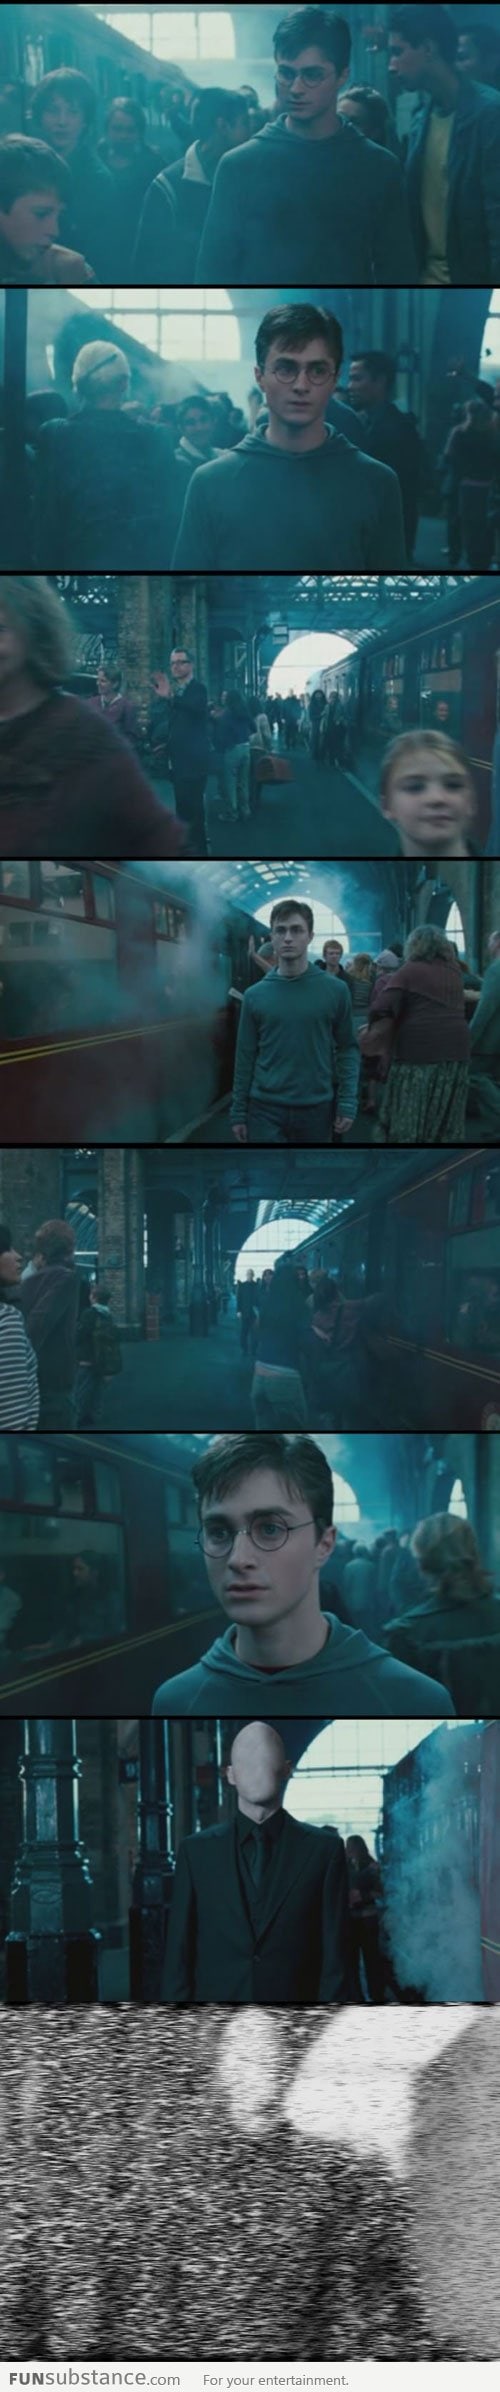 Run Harry, run!